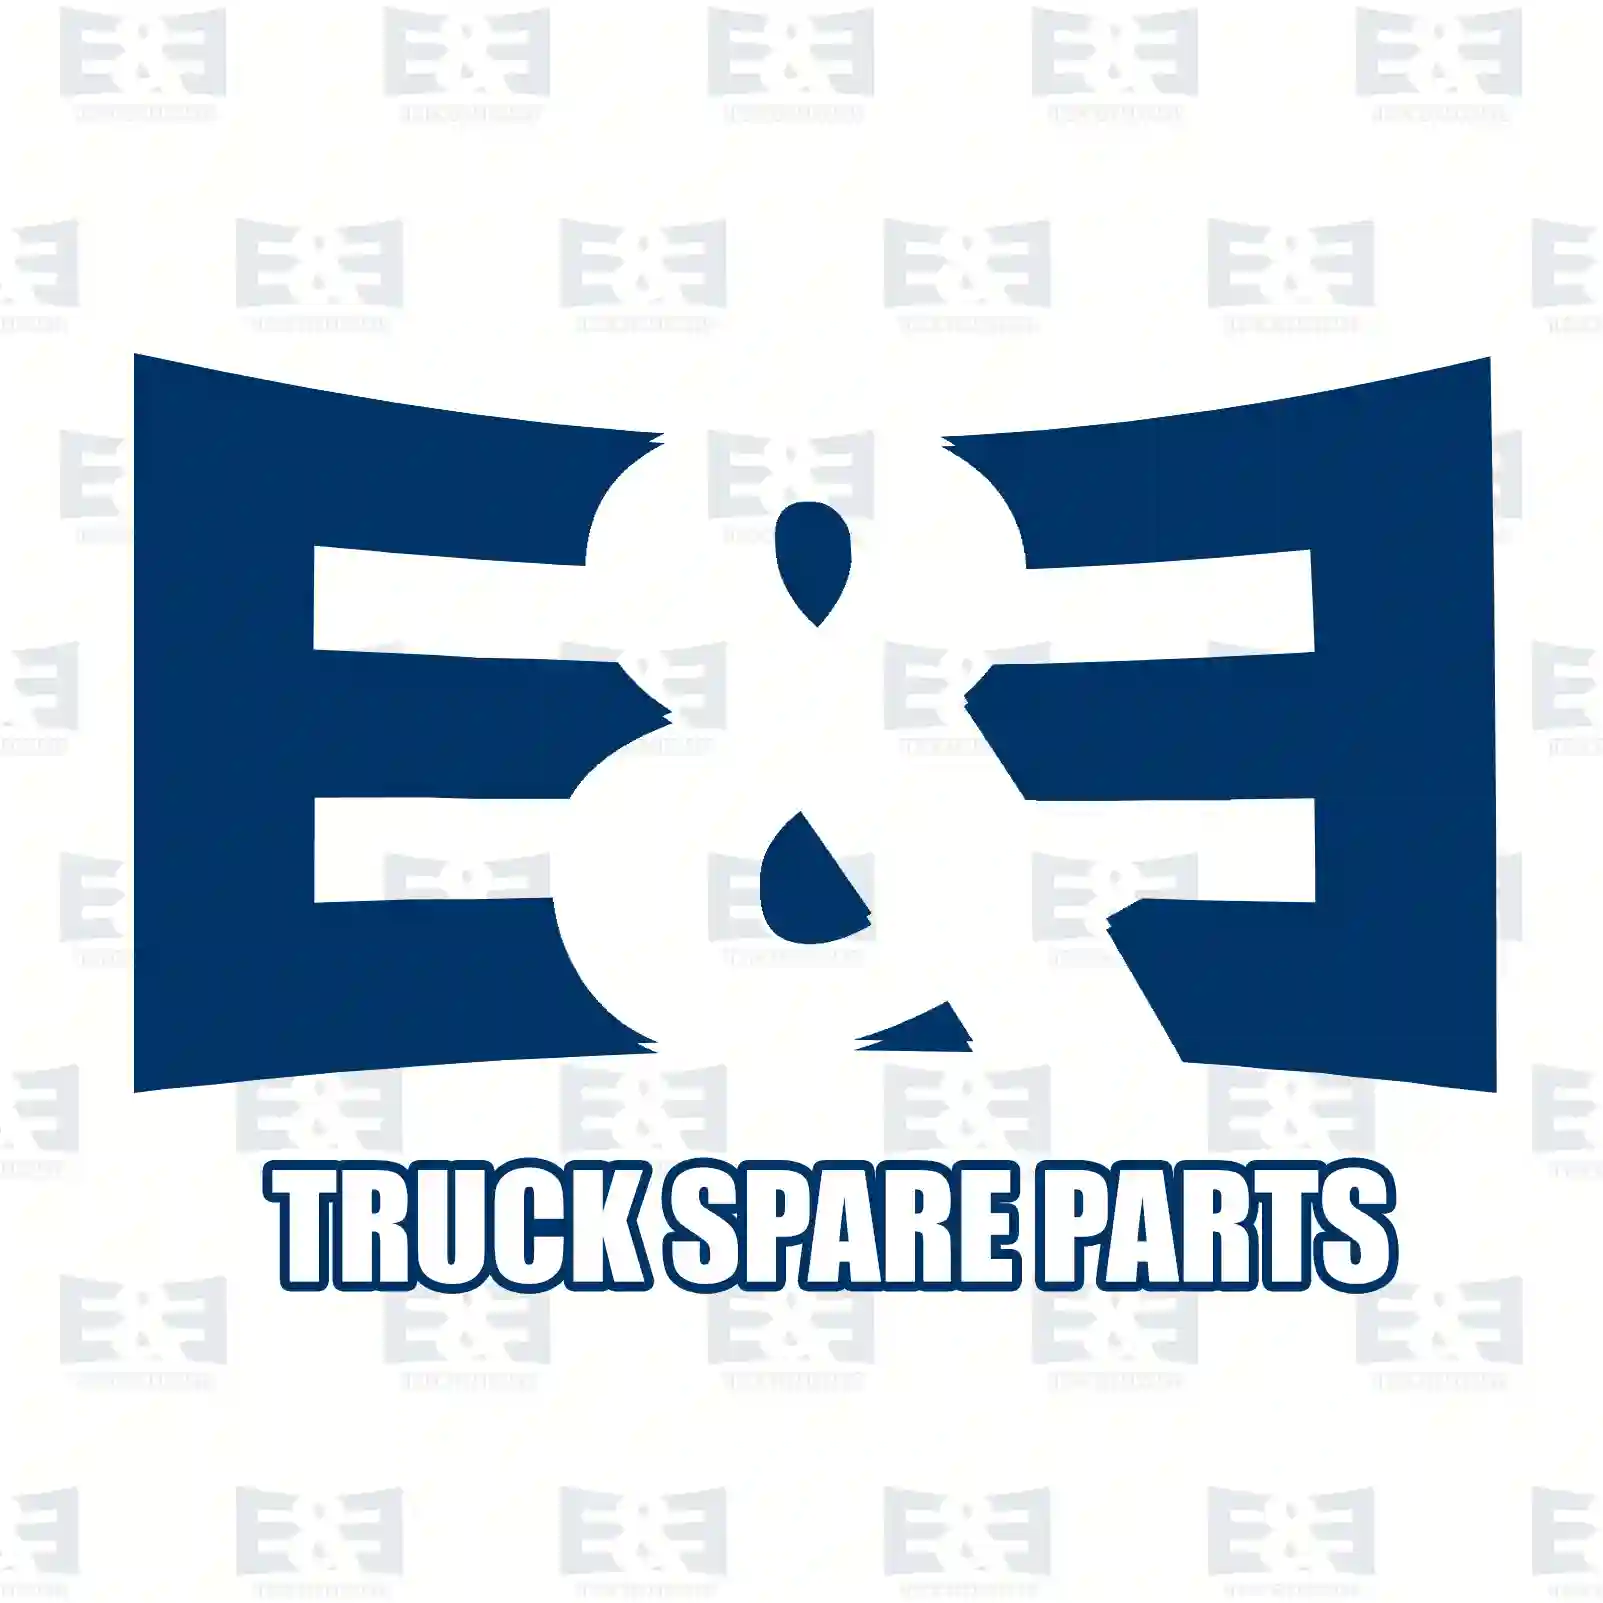 O-ring, 2E2277428, 7400947099, 1375166, 313698, 947099 ||  2E2277428 E&E Truck Spare Parts | Truck Spare Parts, Auotomotive Spare Parts O-ring, 2E2277428, 7400947099, 1375166, 313698, 947099 ||  2E2277428 E&E Truck Spare Parts | Truck Spare Parts, Auotomotive Spare Parts